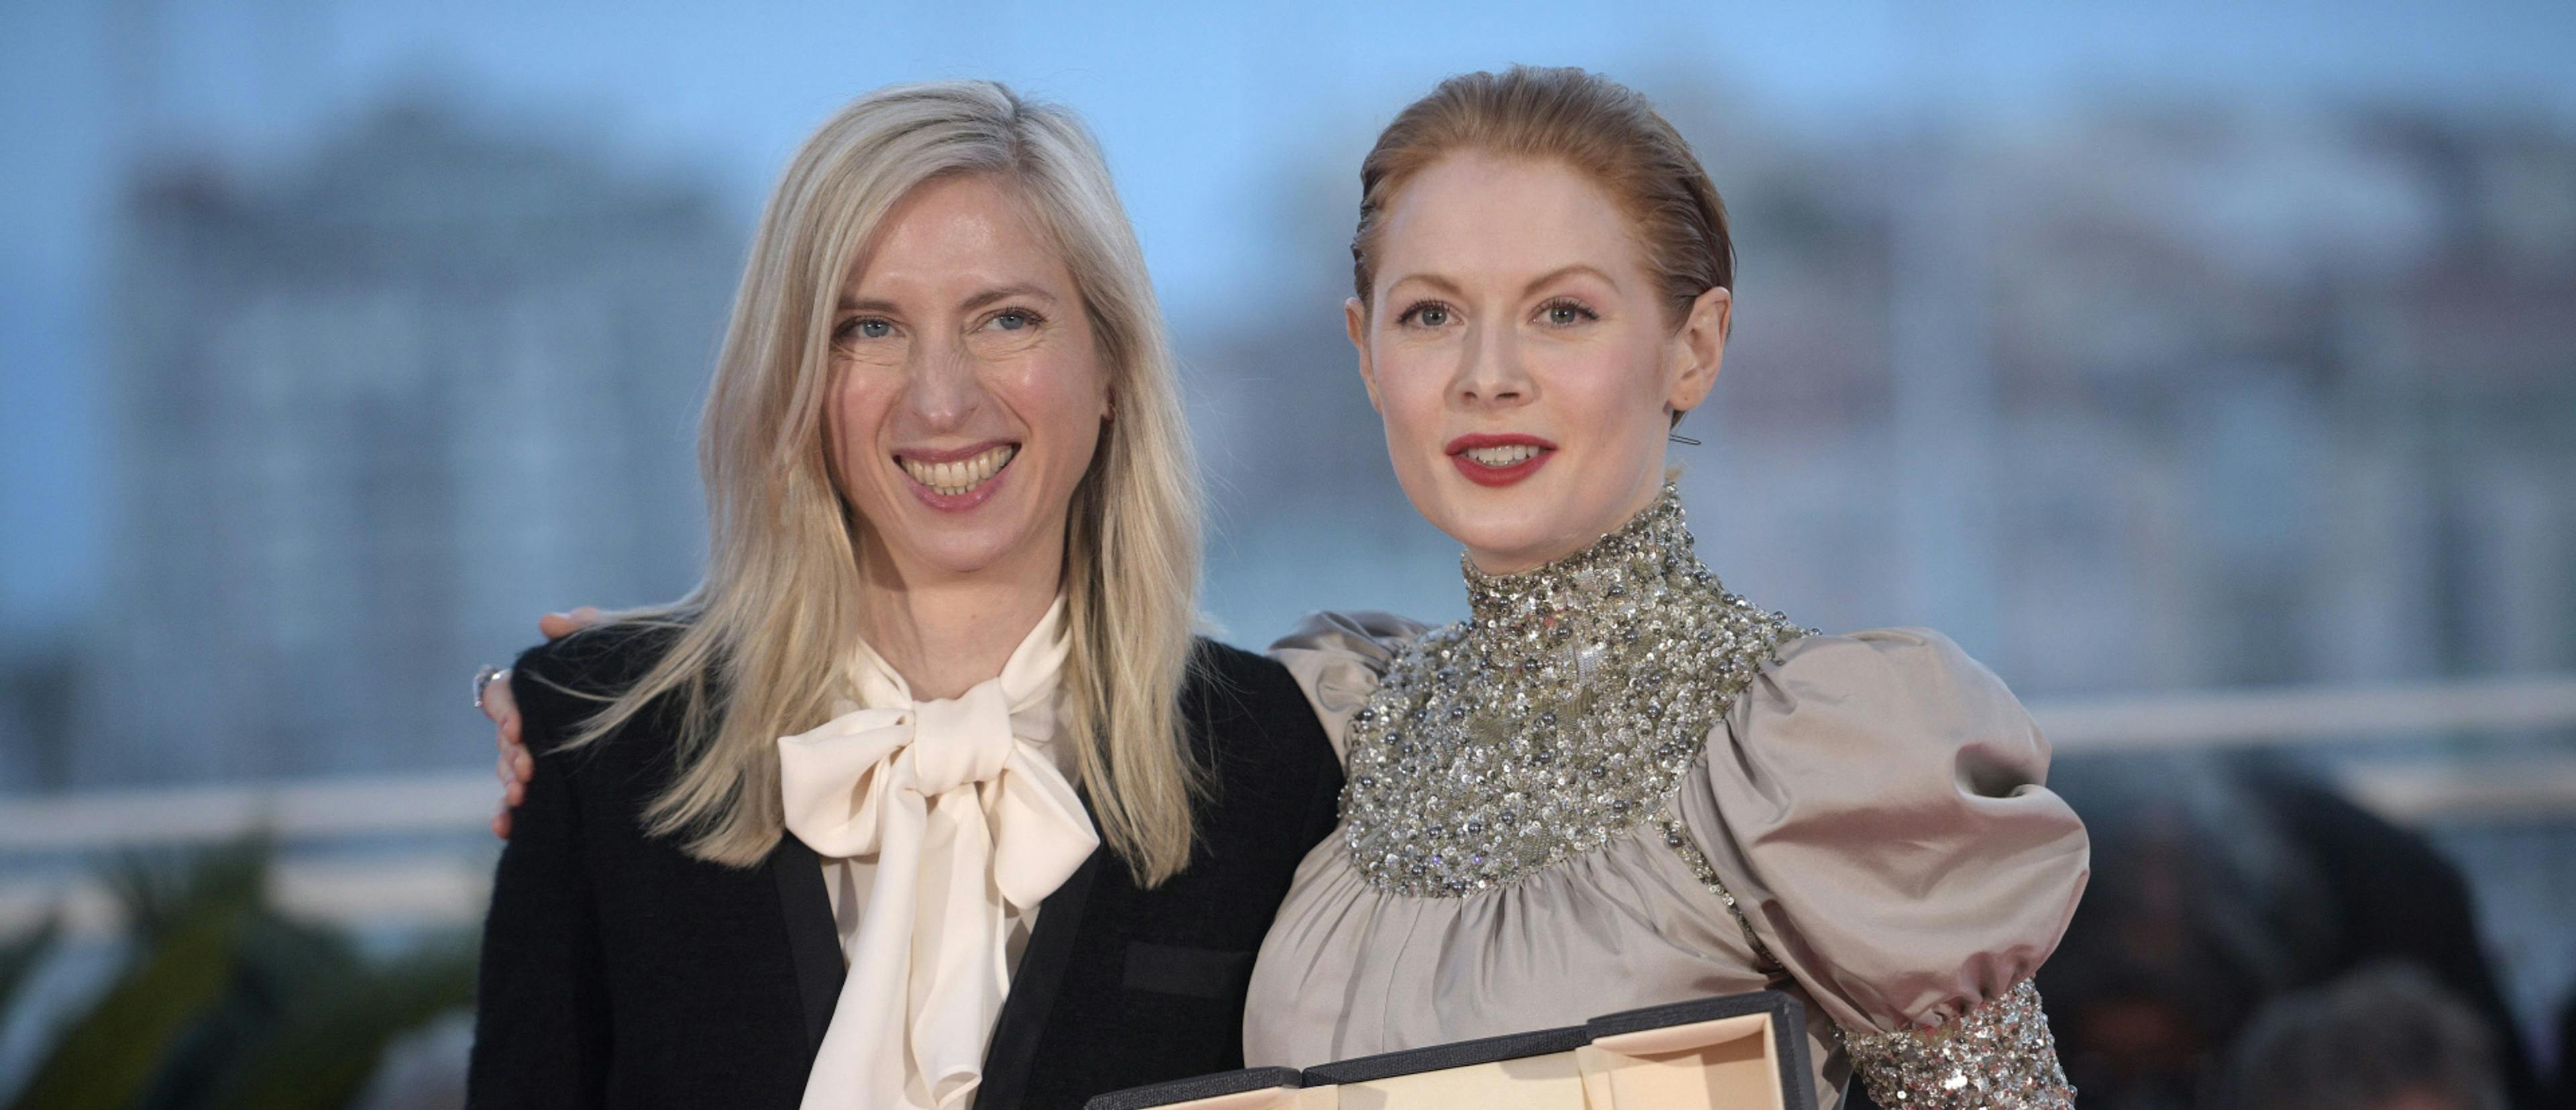 La directora Jessica Hausner (der.) y la actriz Emily Beecham (izq.) en la gala de clausura del Festival de Cannes 2019